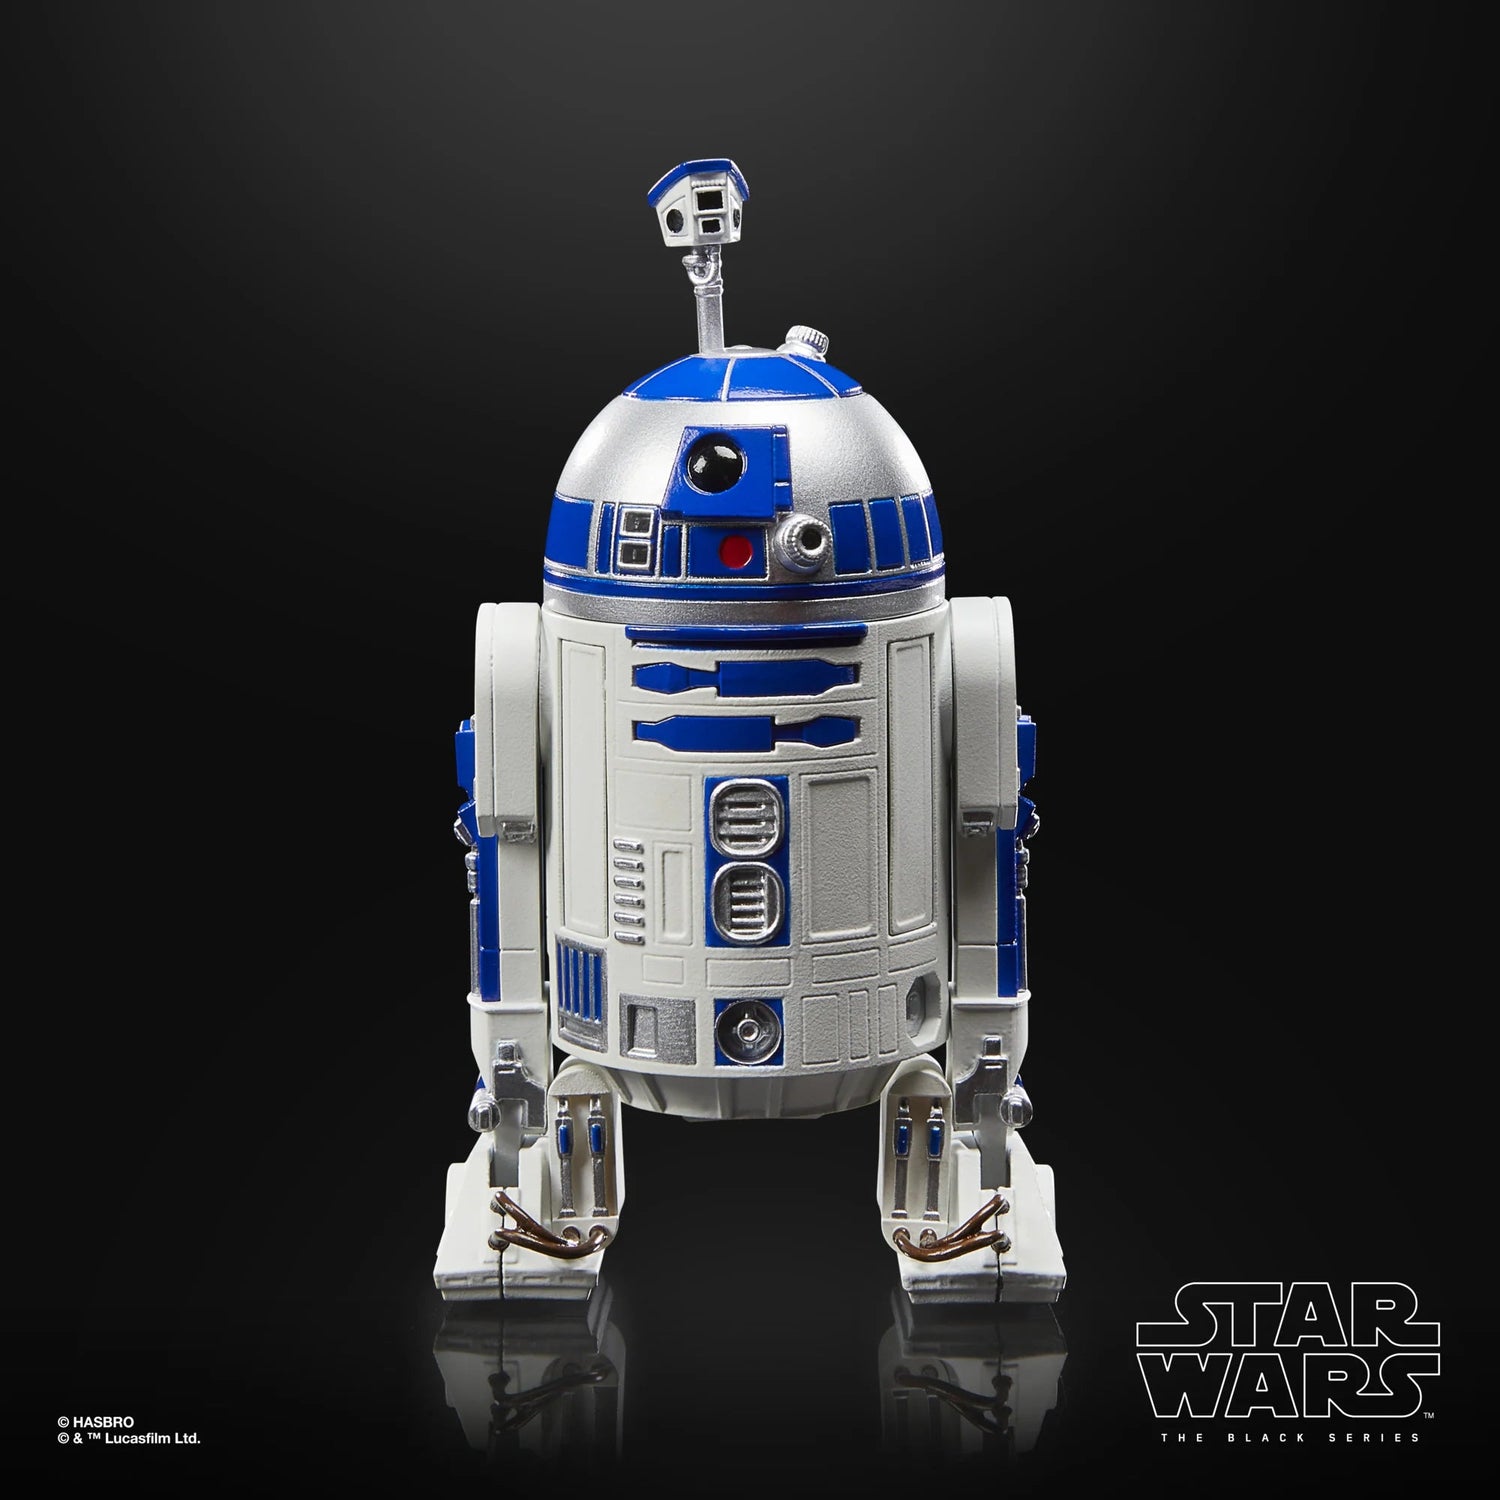 Star Wars: The Black Series Return of the Jedi 40th Anniversary R2-D2 (Artoo-Deetoo) Hasbro